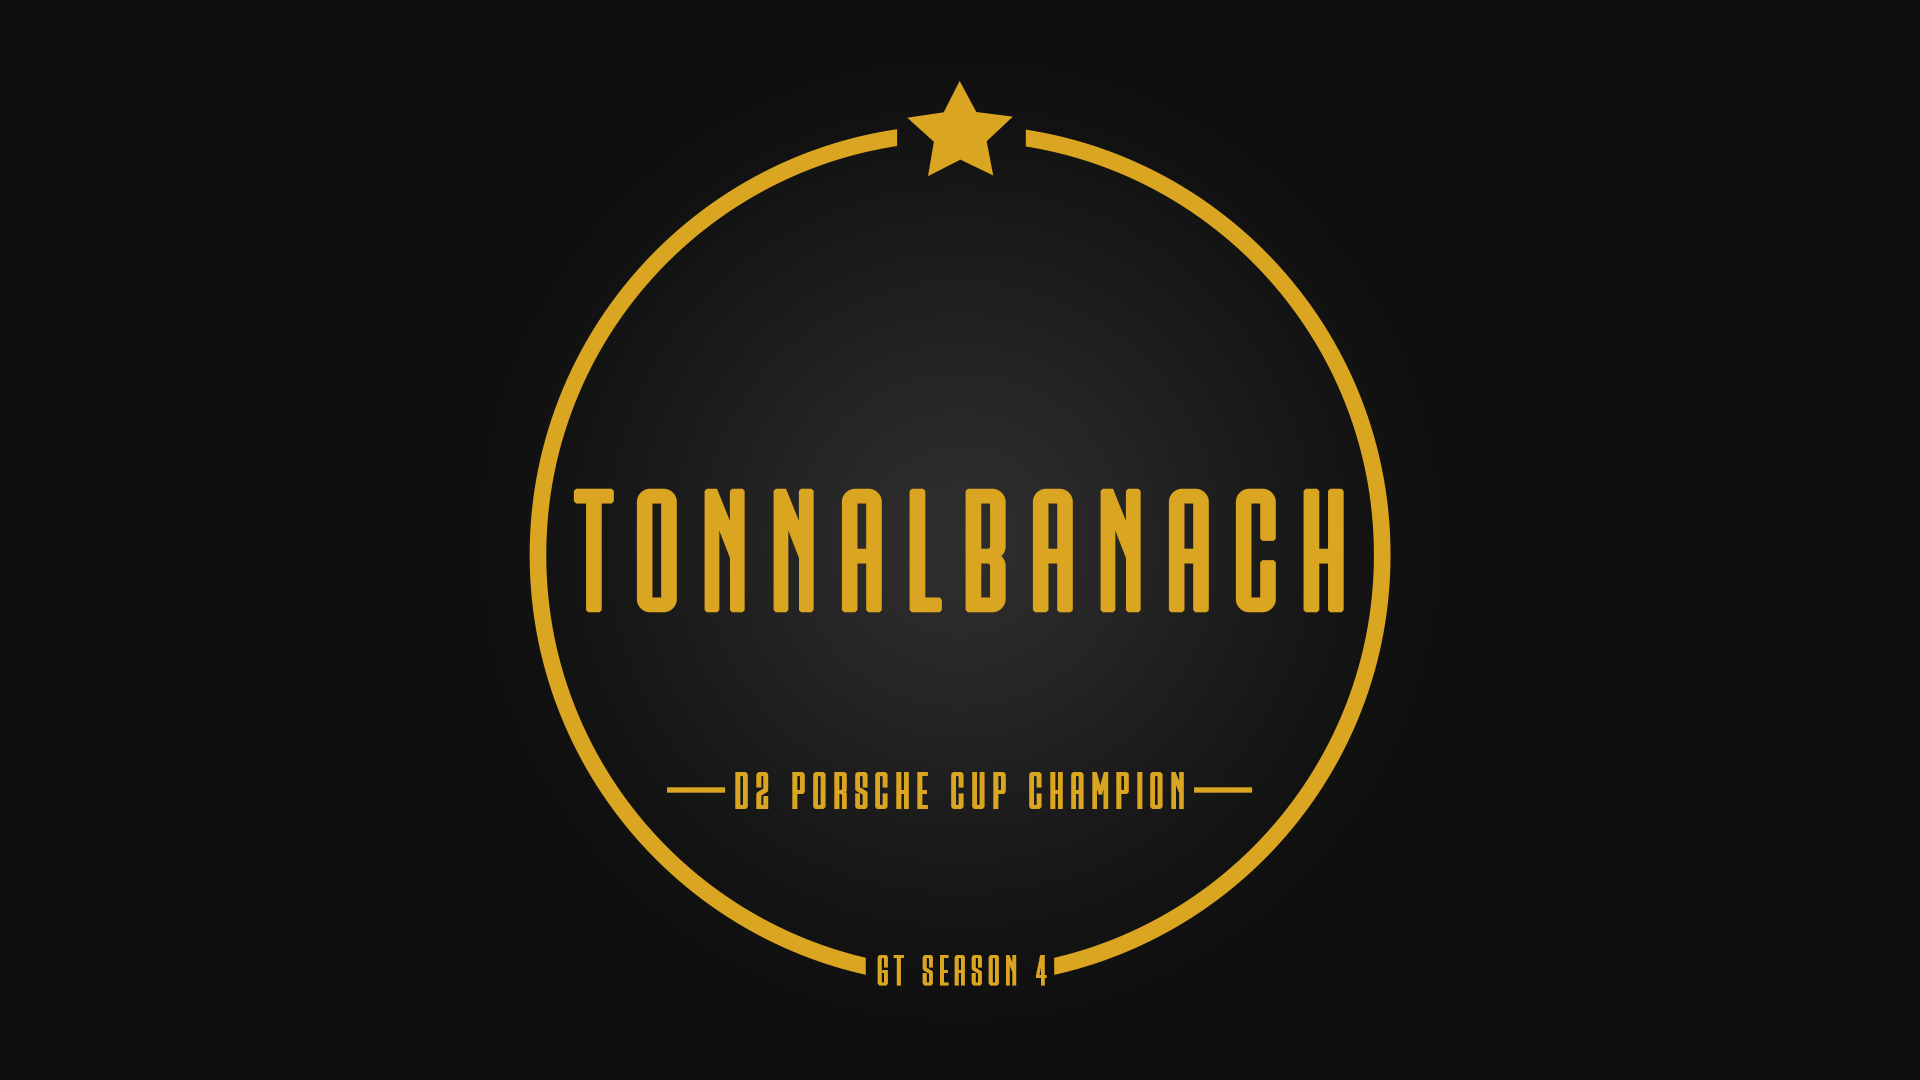 Tier 2 Champion - TonnAlbanach